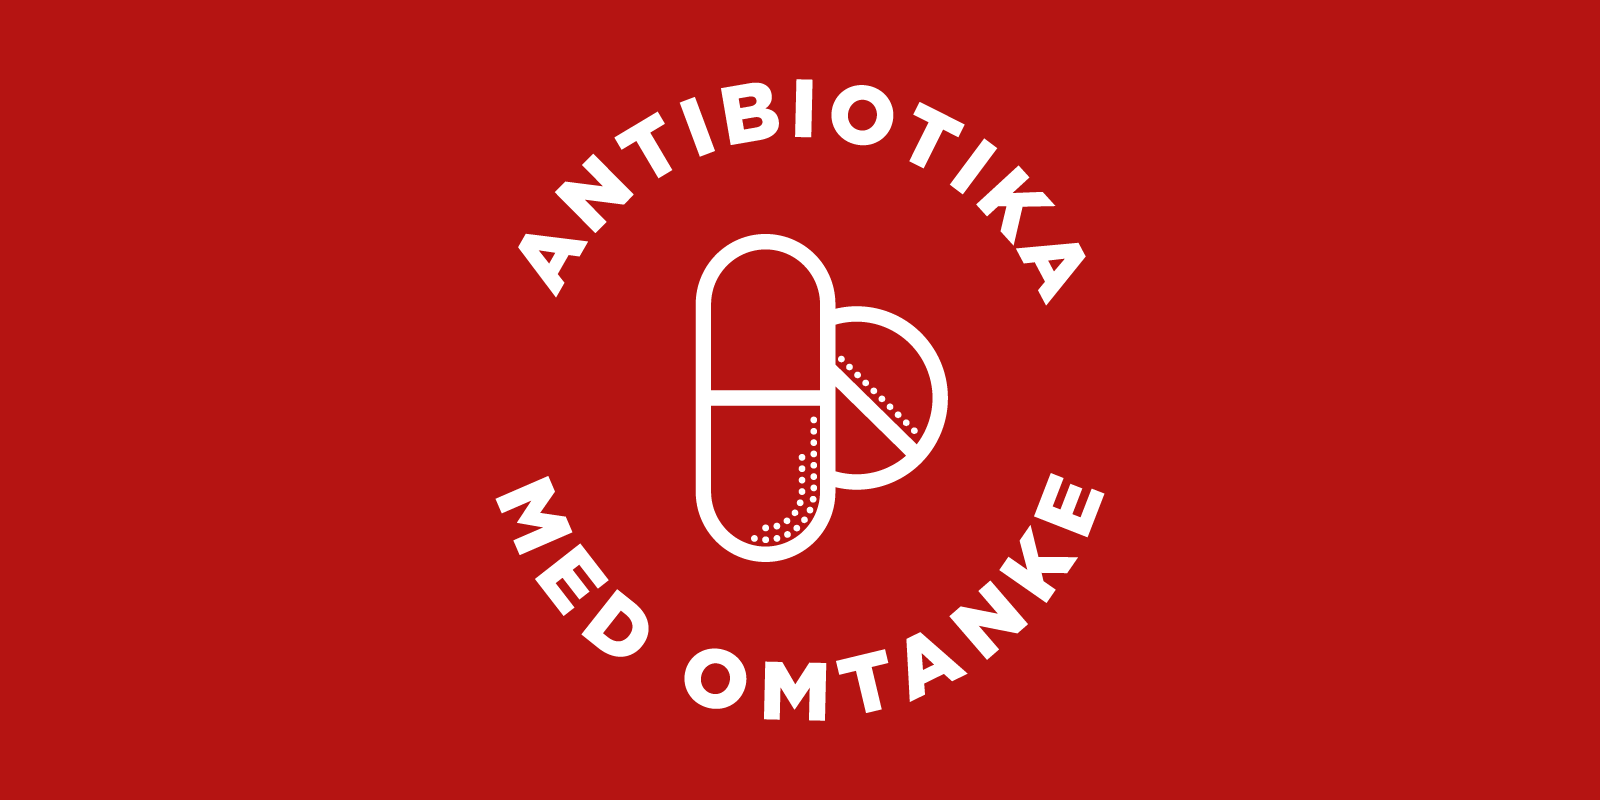 Antibiotika med omtanke logo